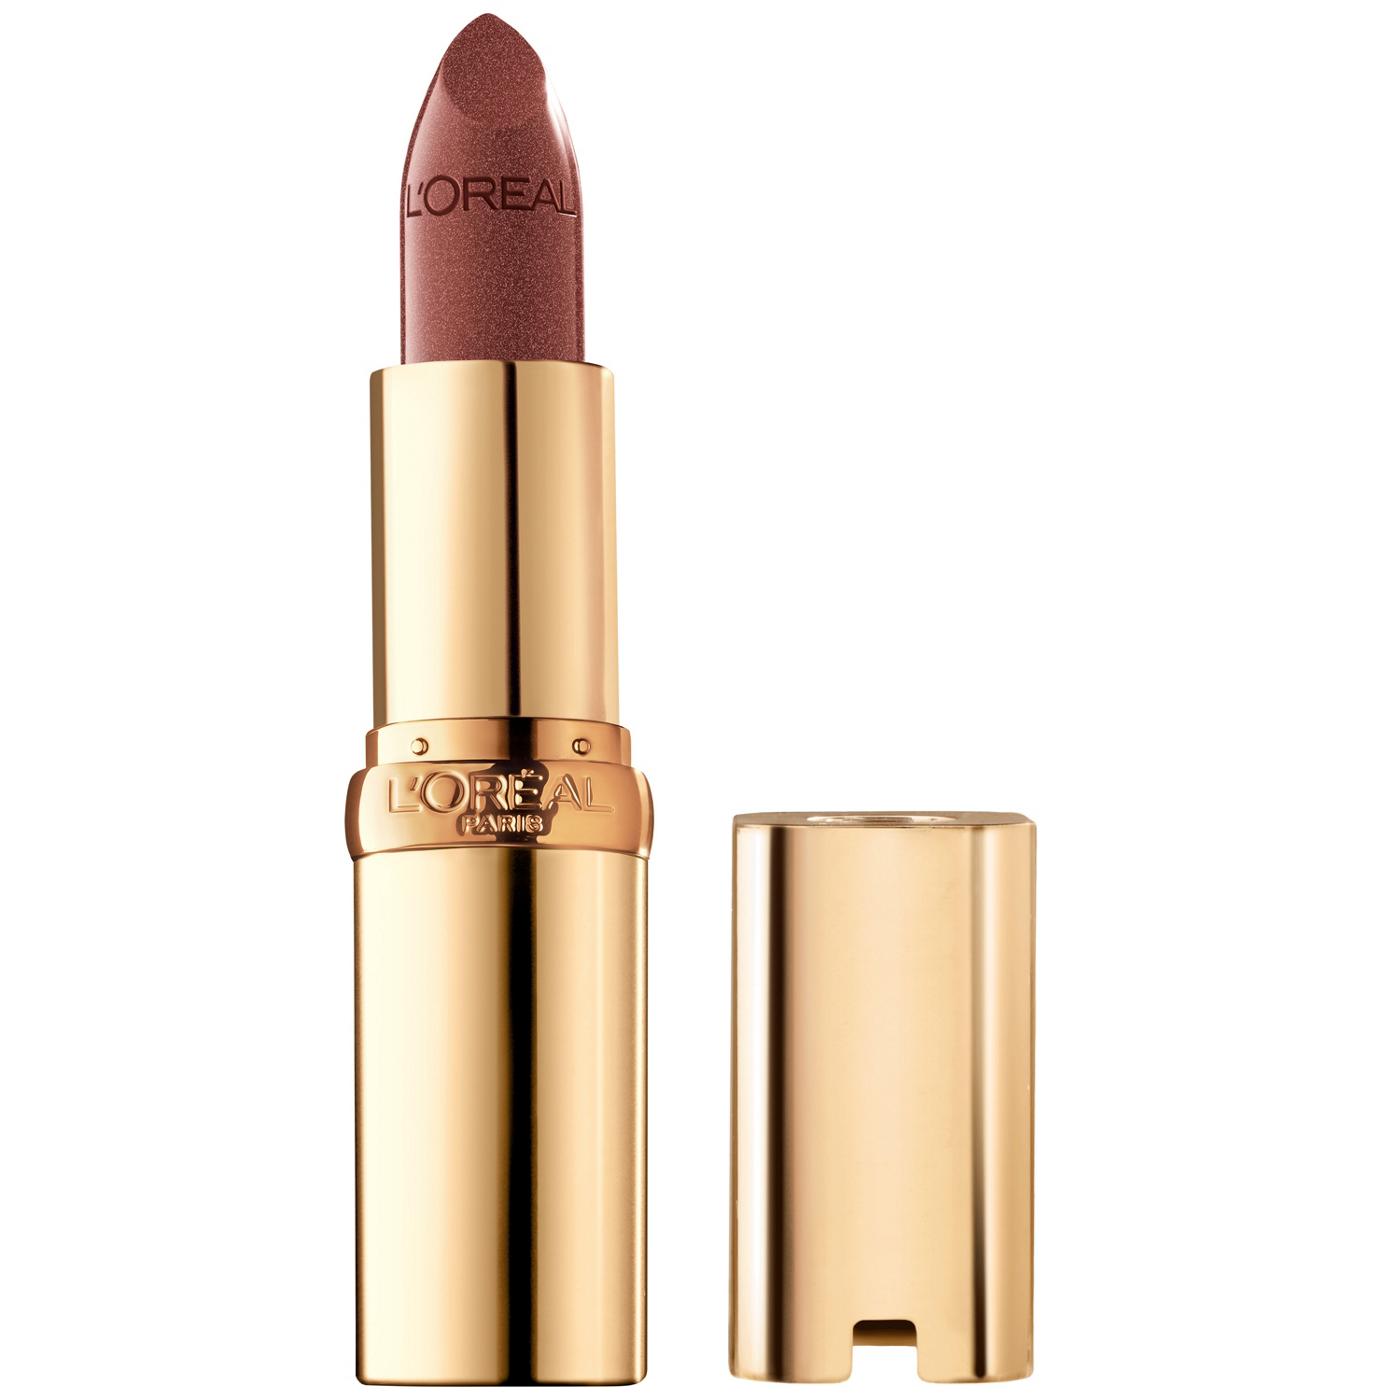 L'Oréal Paris Colour Riche Original Satin Lipstick - Bronzine; image 1 of 5